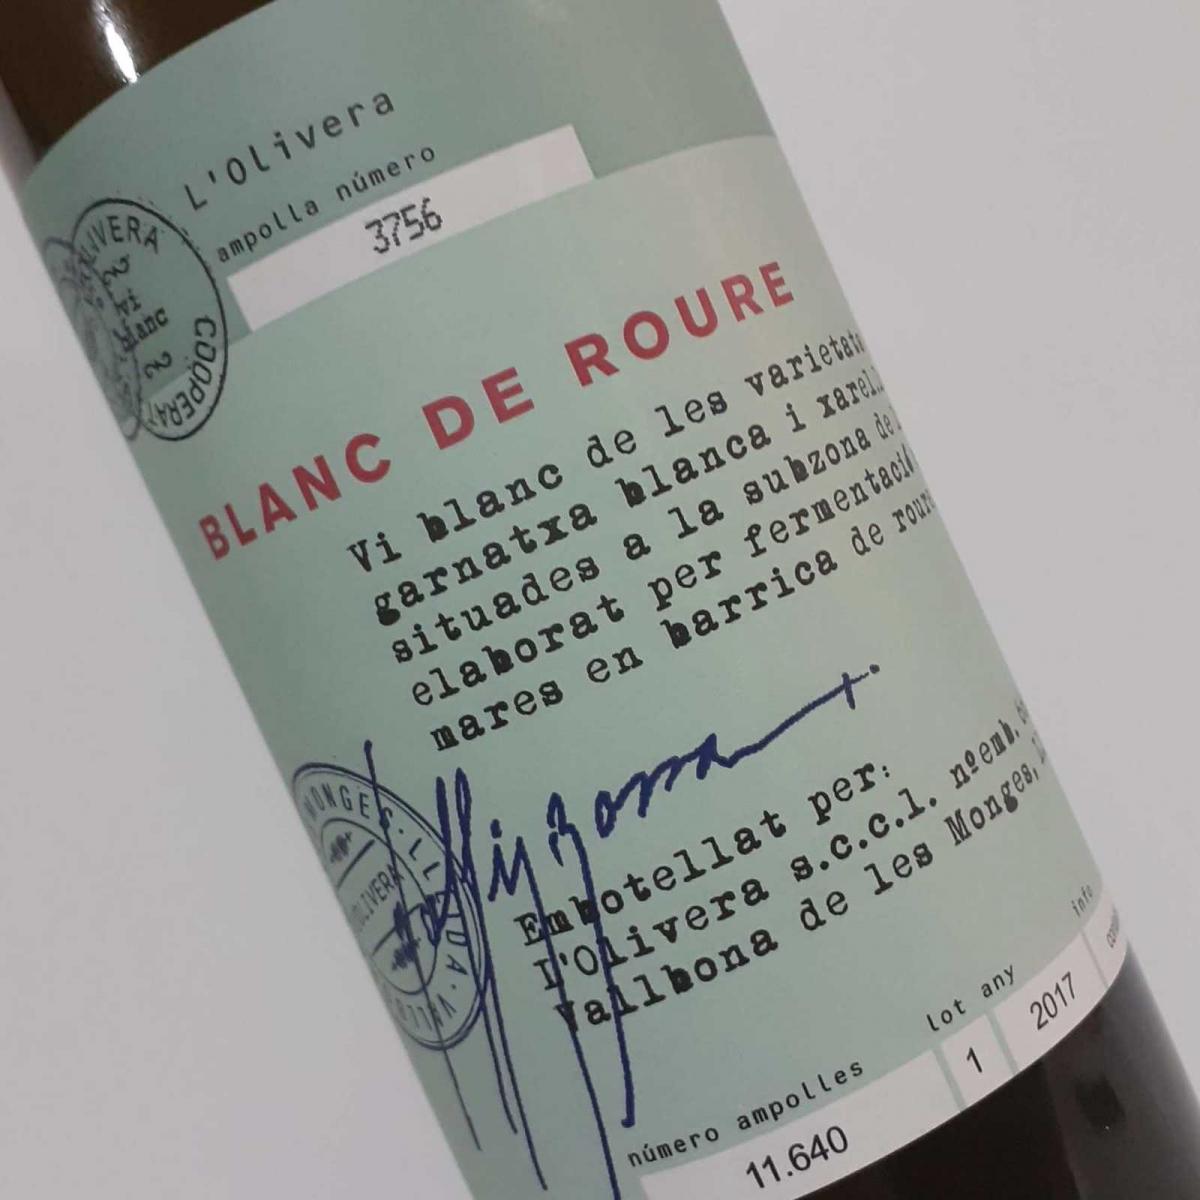 Etiqueta de vino Blanc de Roure